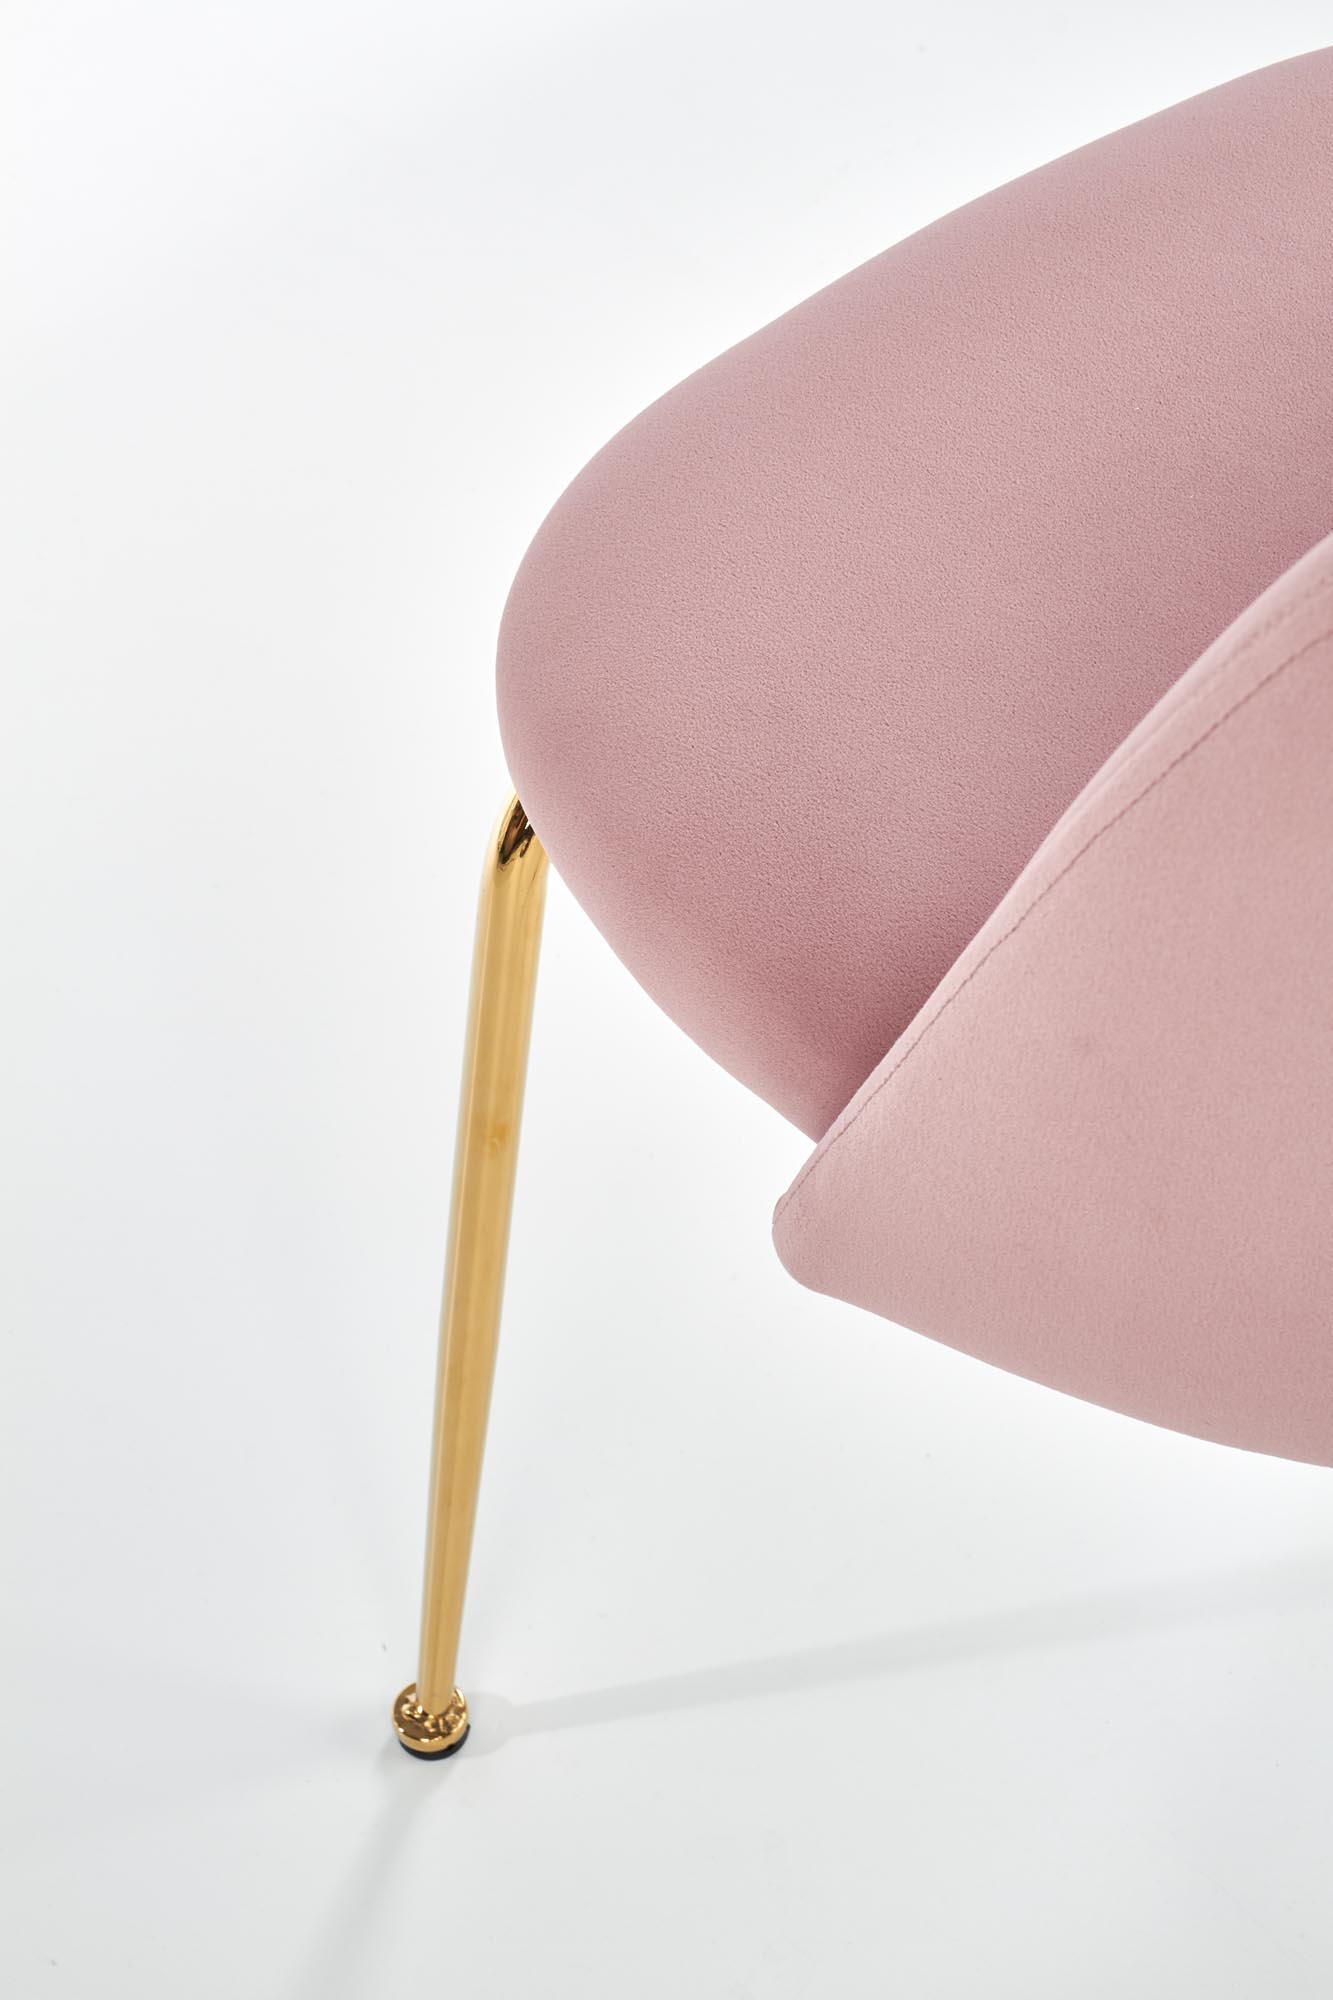 Stolica K385, boja: svijetlo roza